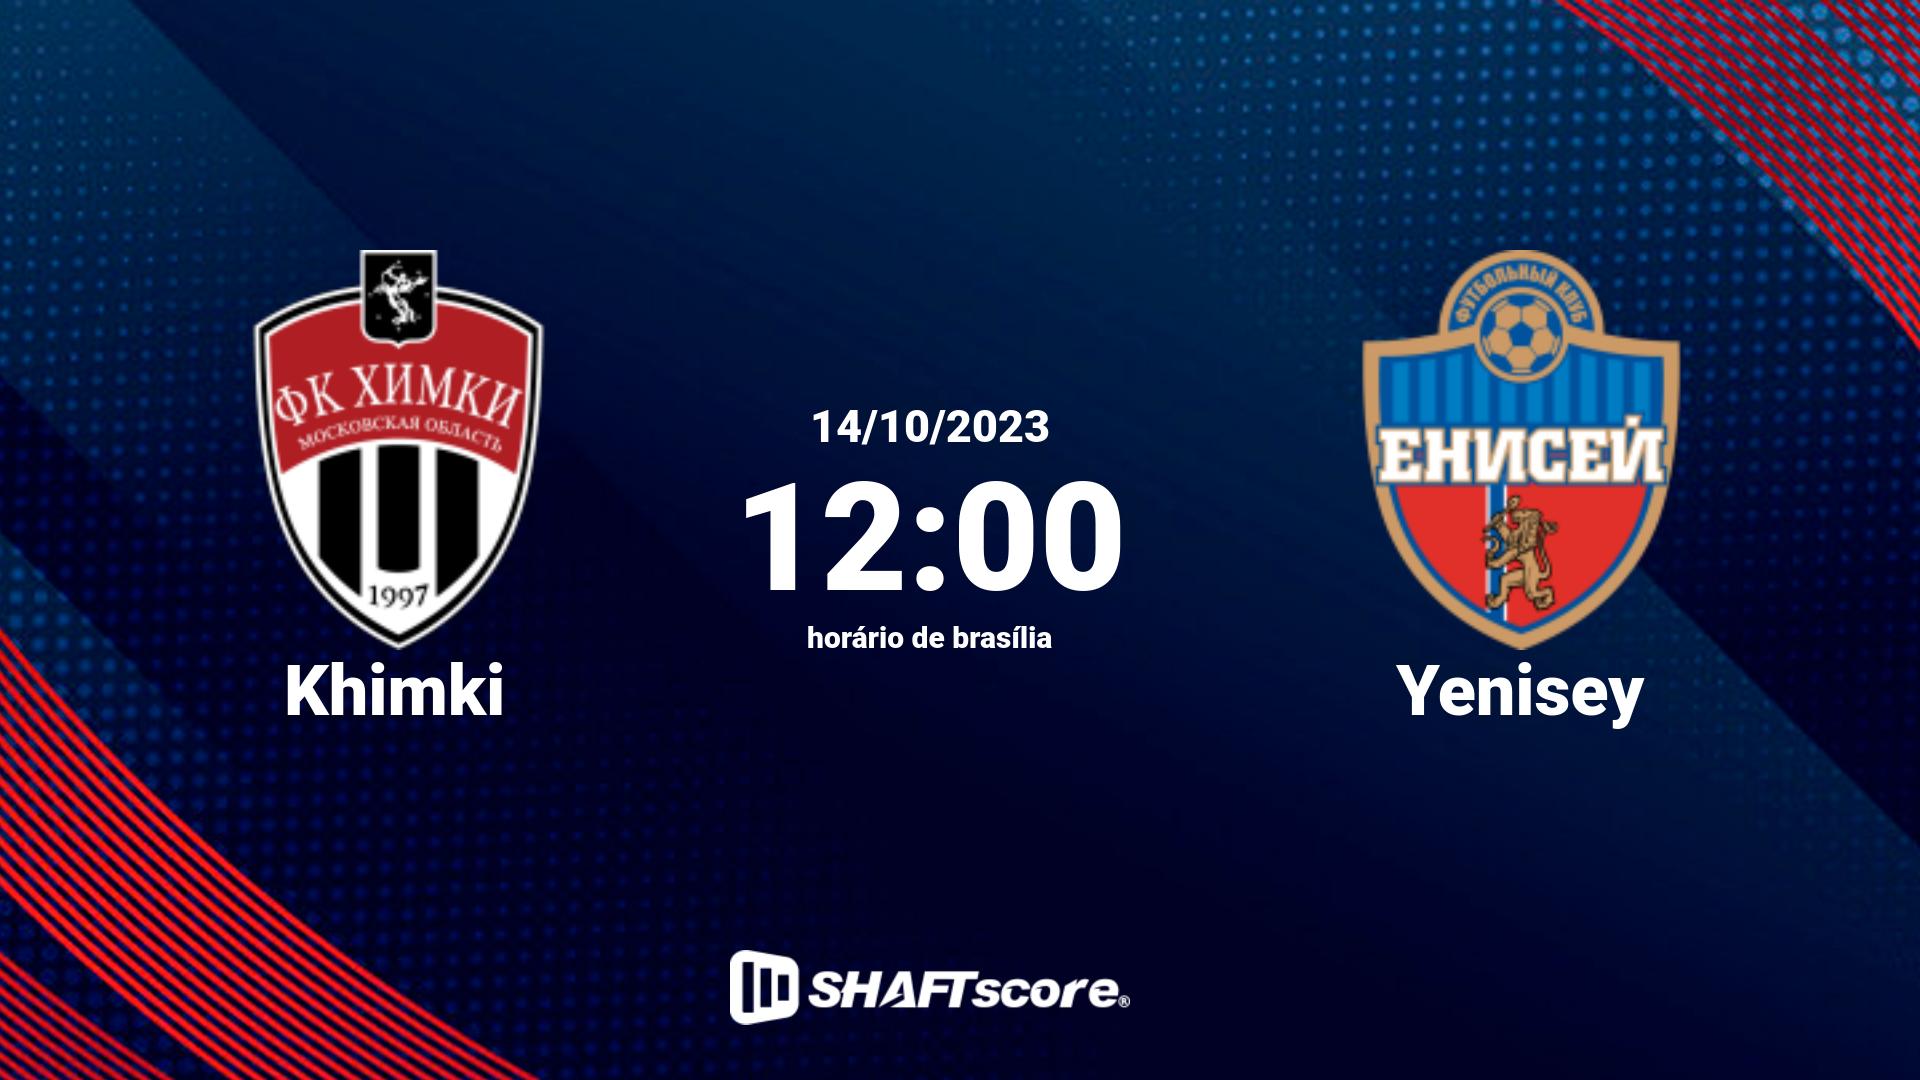 Estatísticas do jogo Khimki vs Yenisey 14.10 12:00